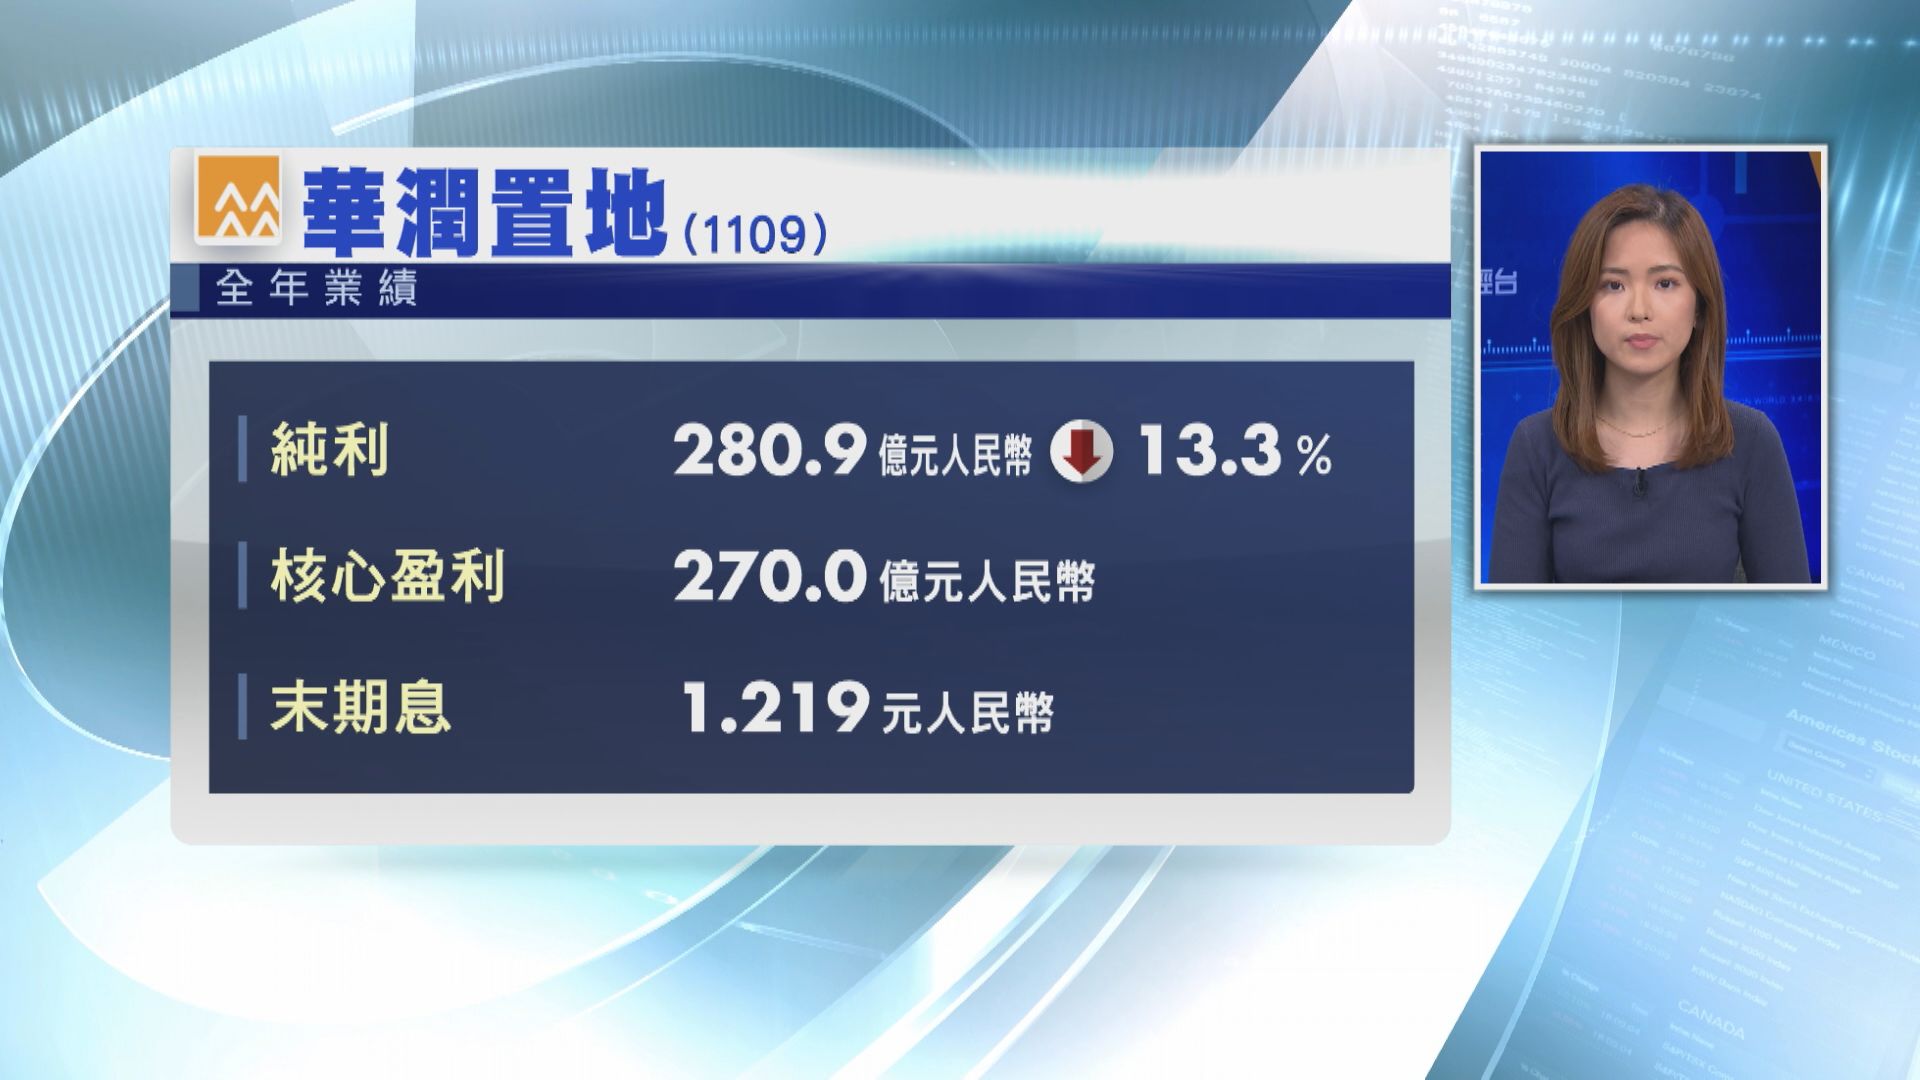 【藍籌業績】潤地去年少賺13% 末期息1.219人幣 